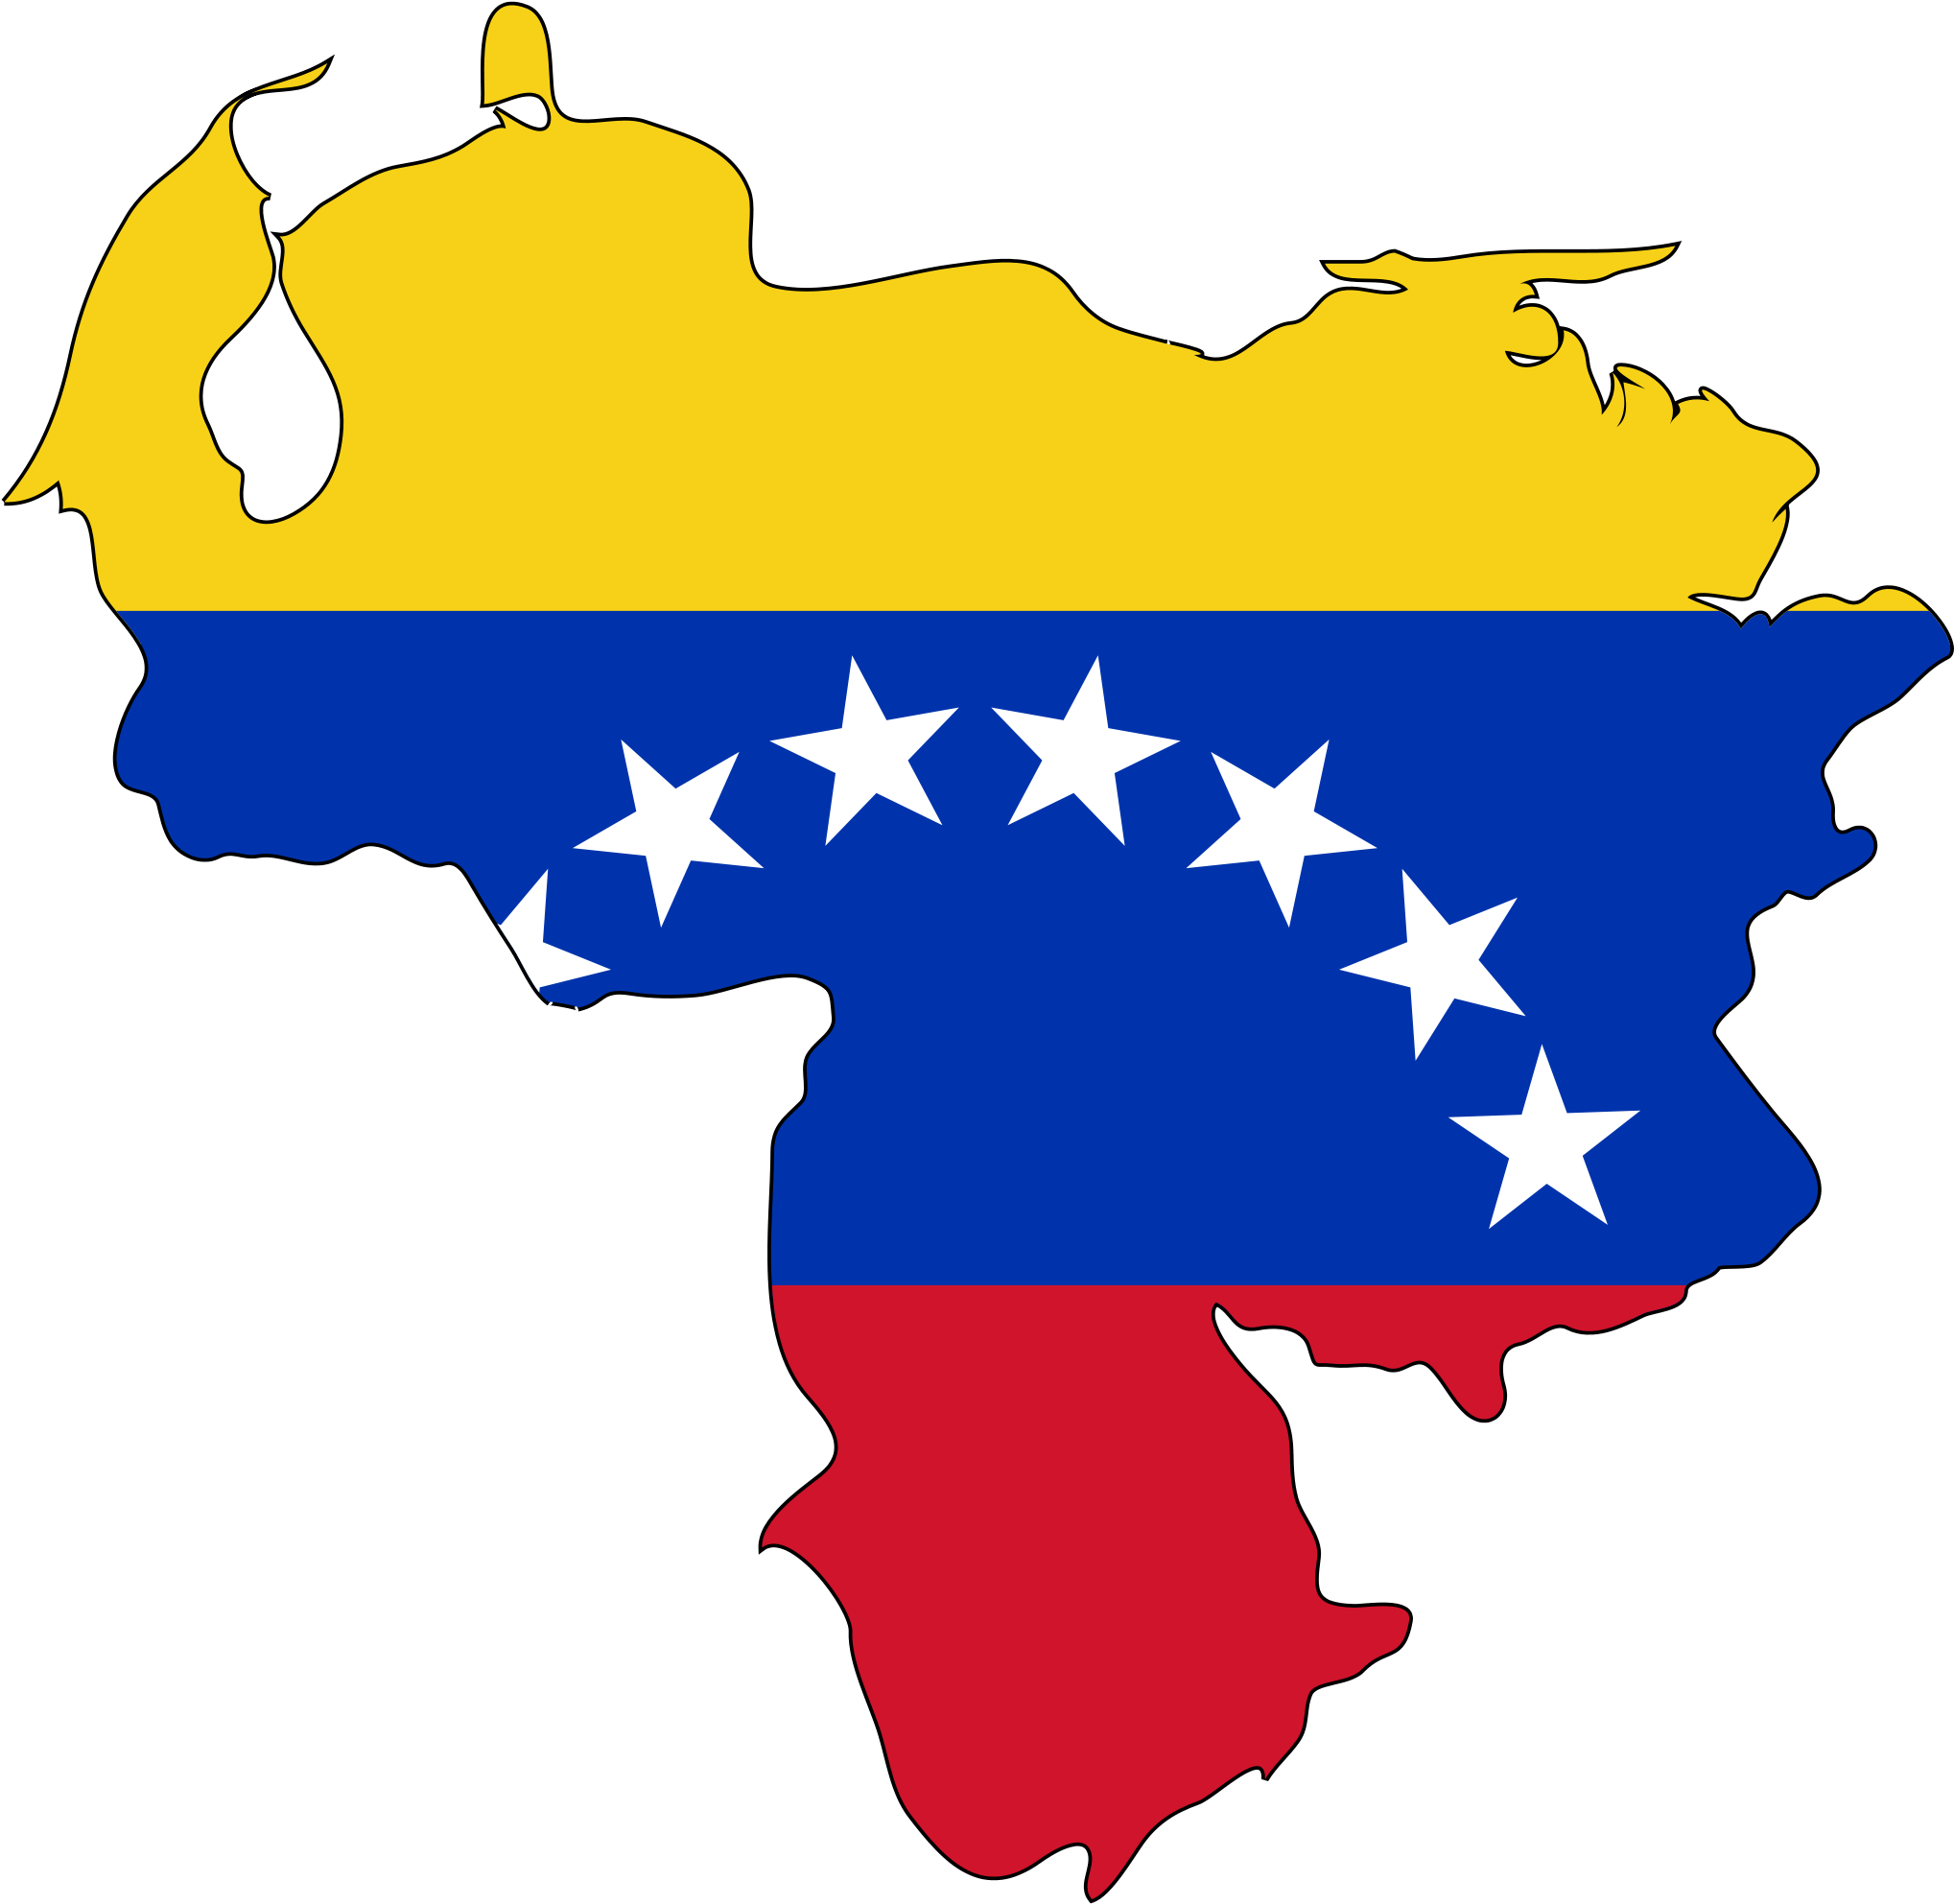 Venezuela - Venezuela Flag Map Png (2048x1992)